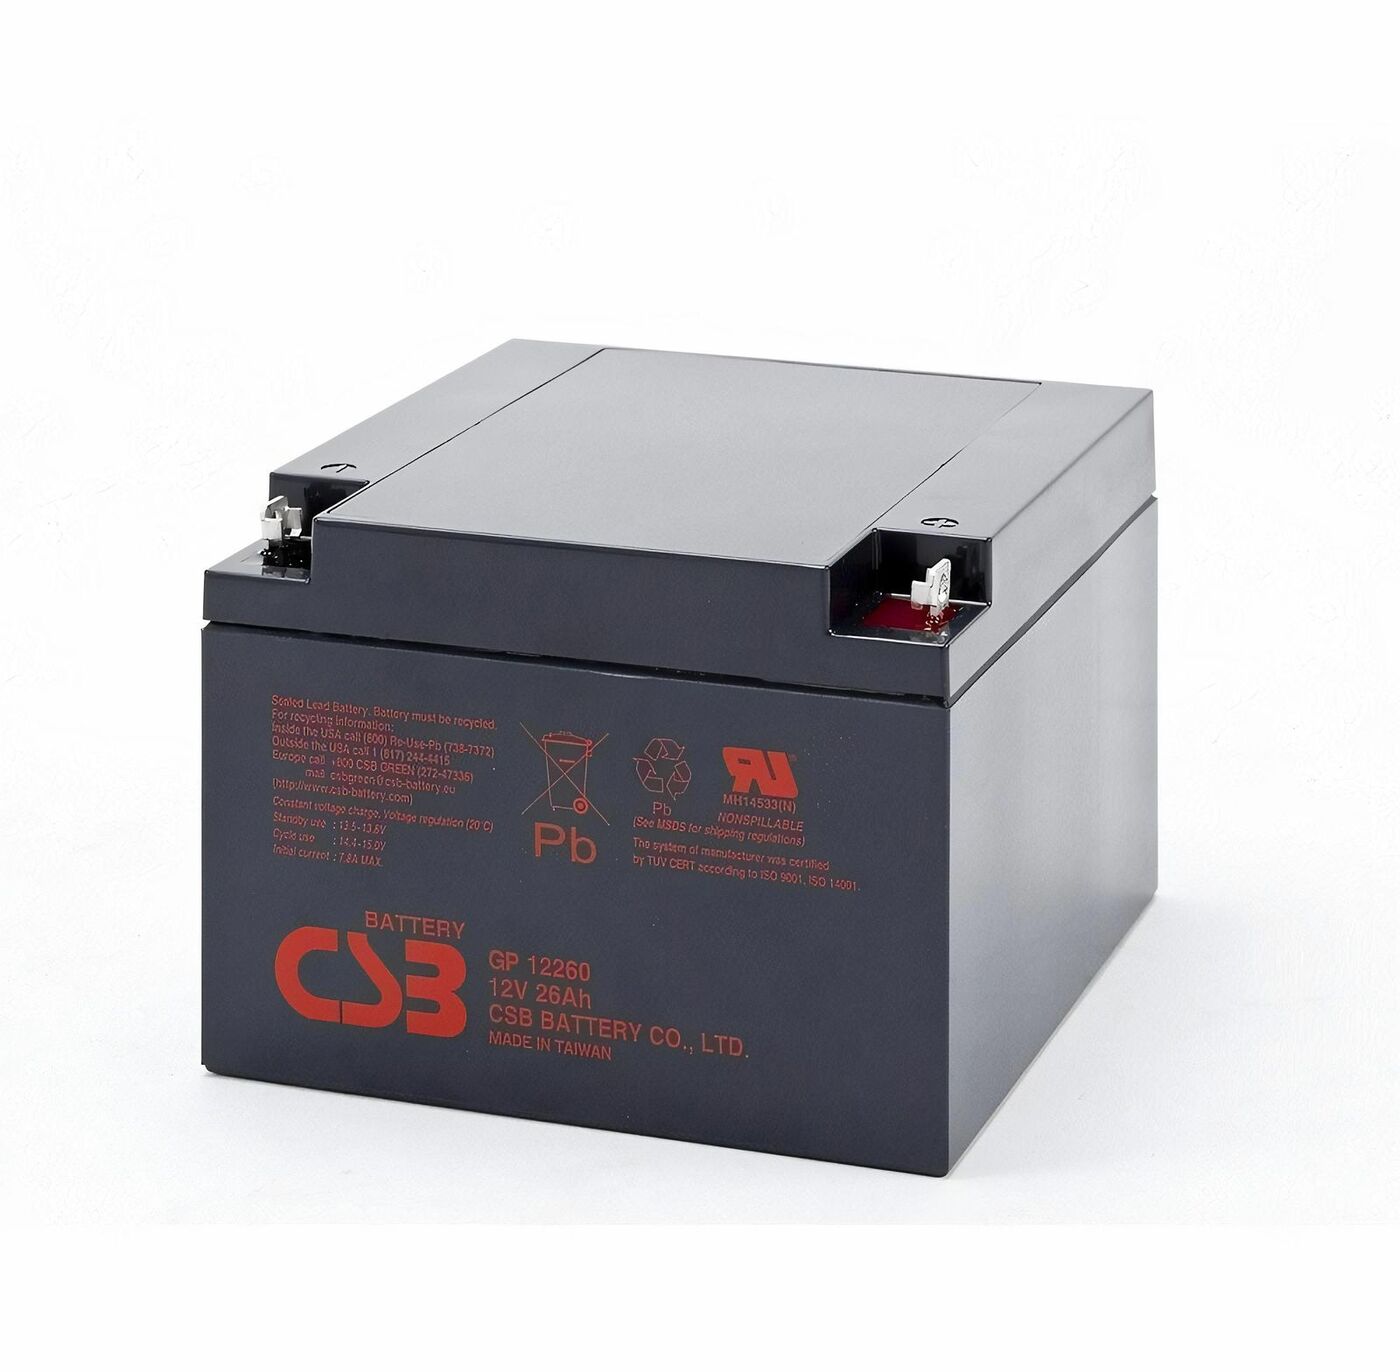 Свинцово-кислотный аккумулятор CSB GP 12260 12V 26AH 239 свинцово кислотный аккумулятор csb gp 1272 f2 12v 7 2ah 8604